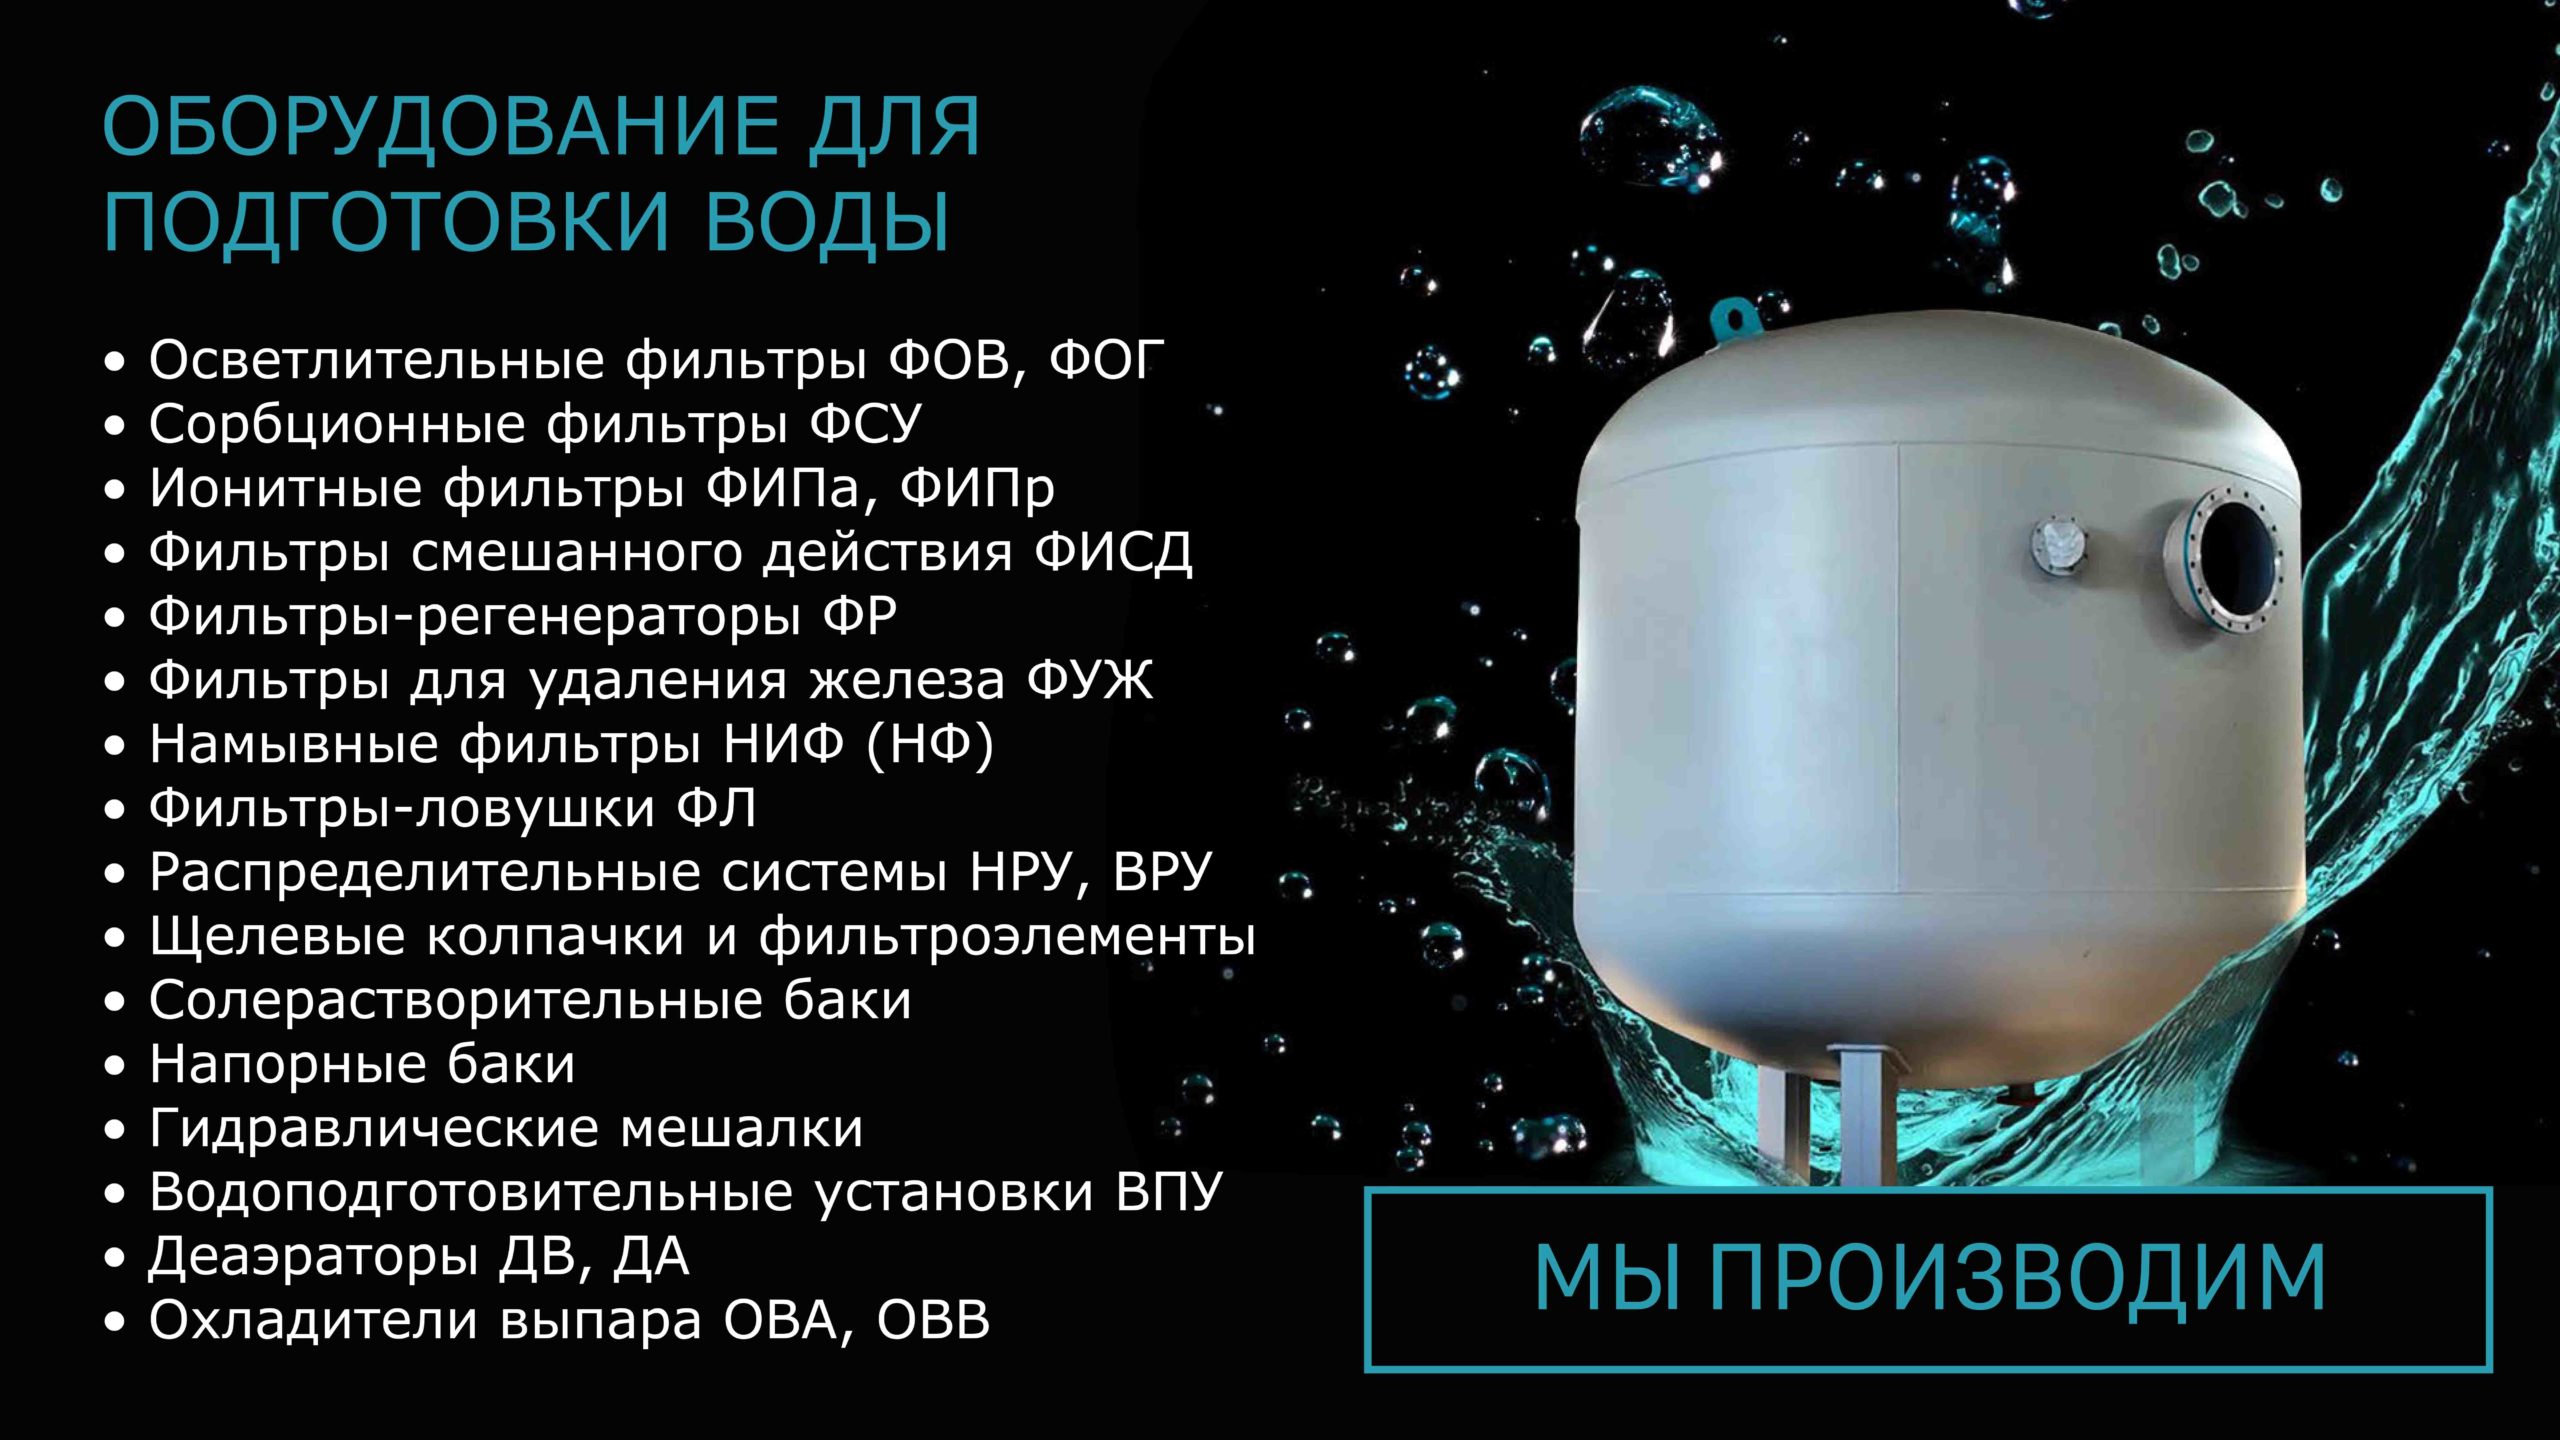 СТИЛСГРУПП - оборудование для подготовки воды